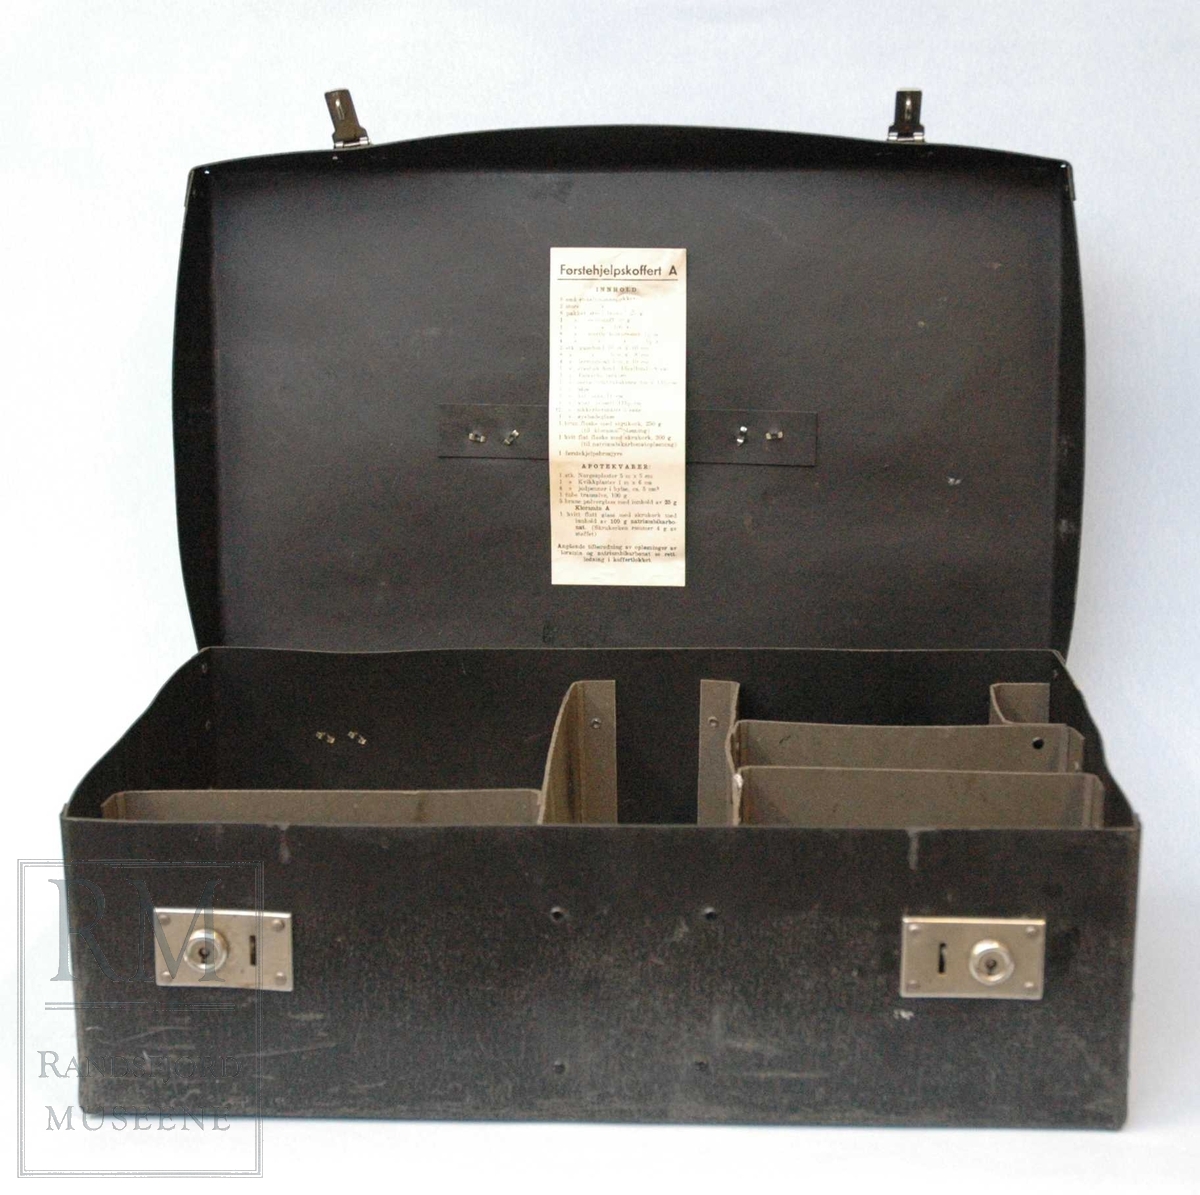 a) koffert i stiv papp. 2 stk lås i blankt metall med nøkkelhull.Kofferten inneholder 8 rom adskilt av pappvegger. 
b) pinsett
c) plaster
